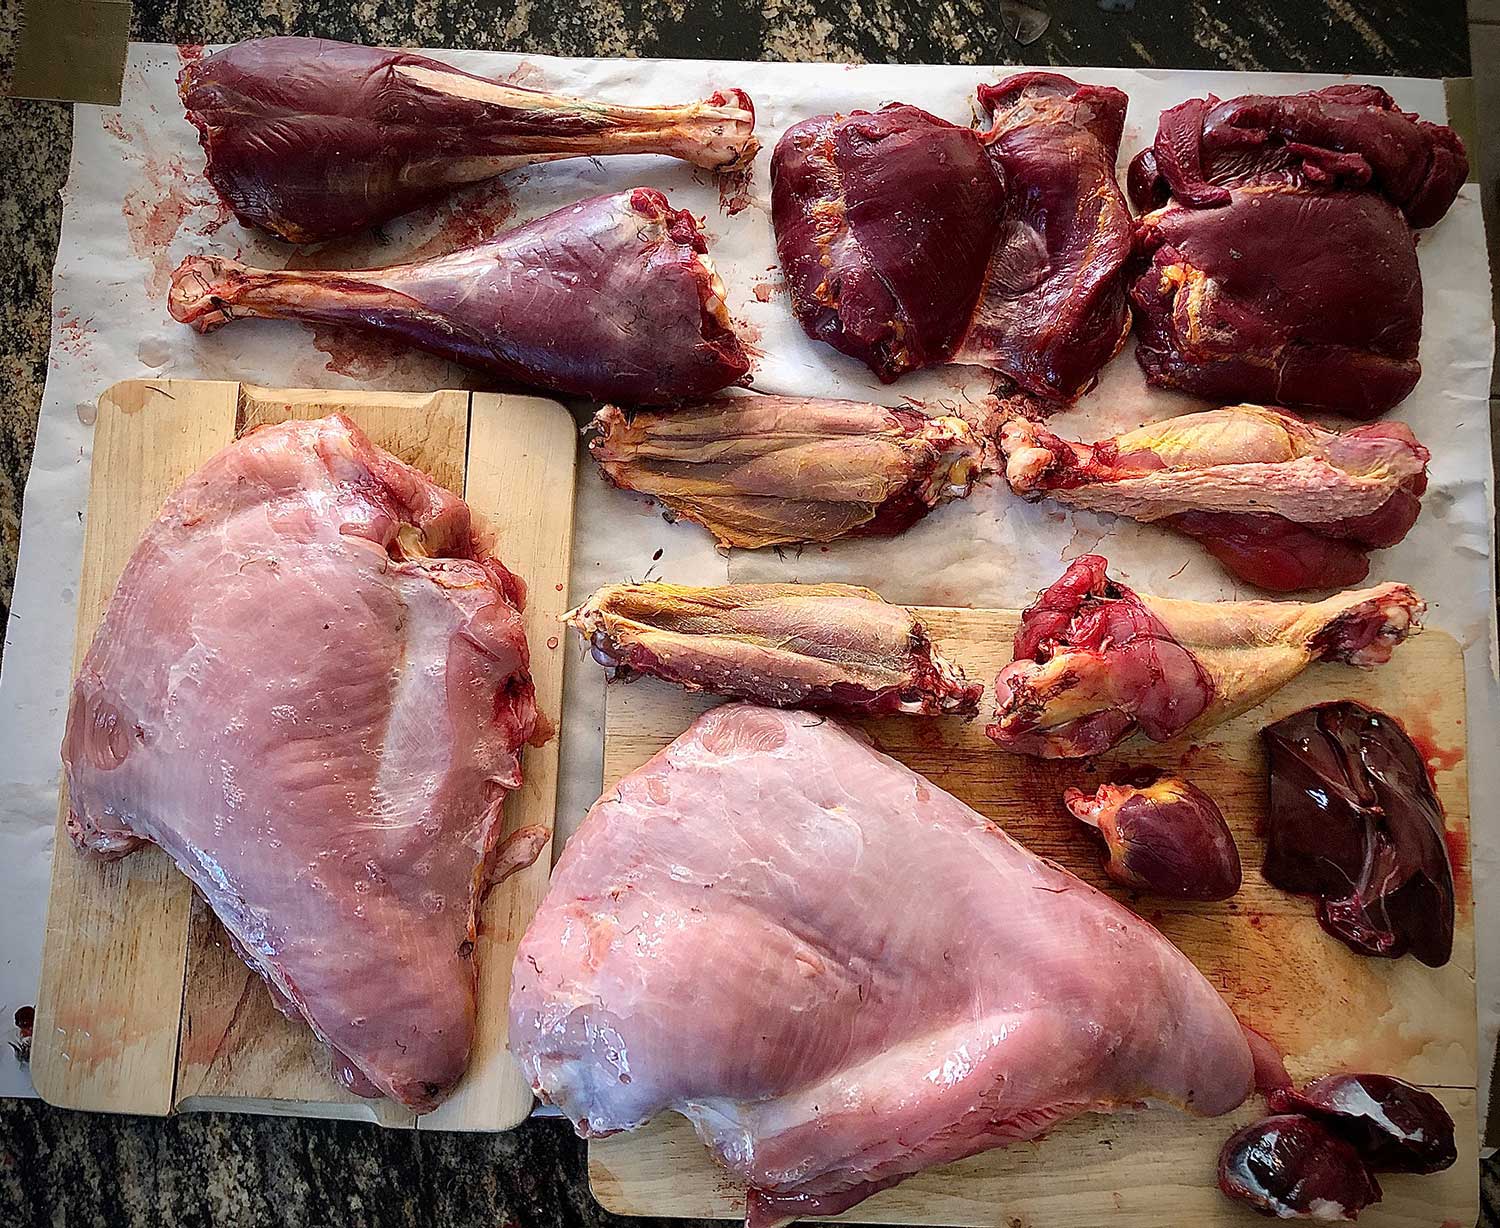 Butchering Wild Turkey